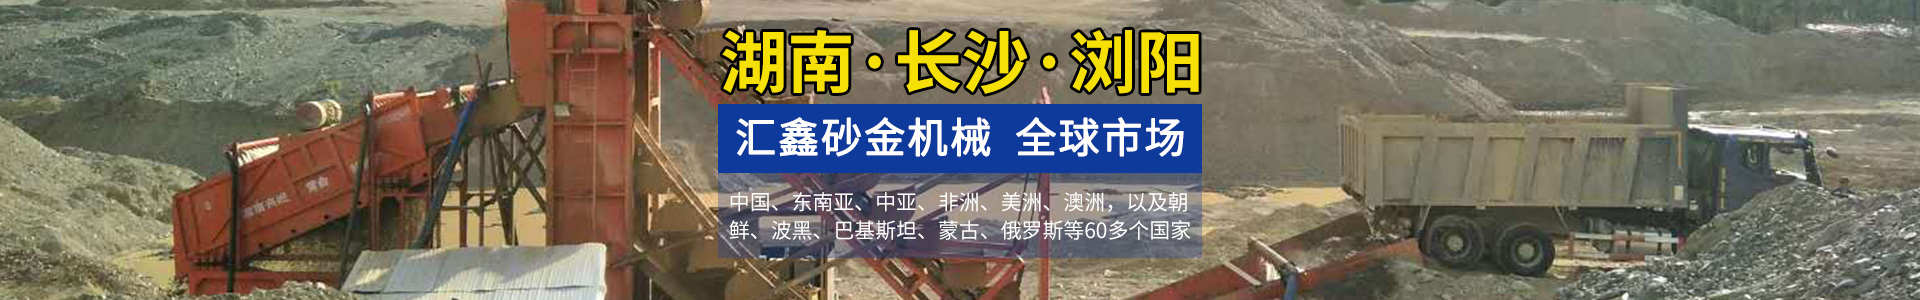 浏阳汇鑫工贸有限公司--淘金设备厂家|沙金设备定制|淘金船设备|挖沙船|洗砂机